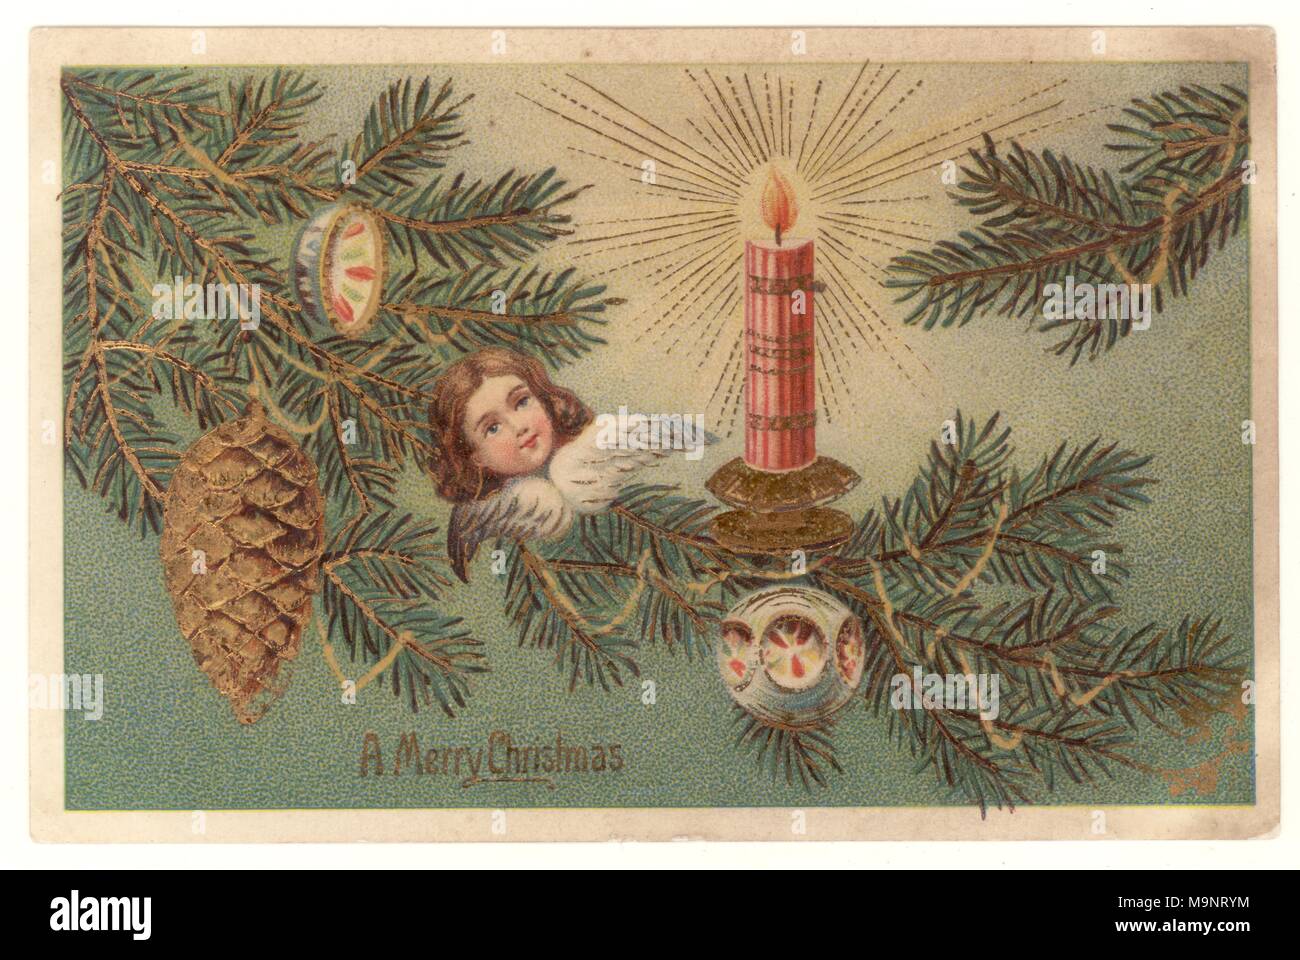 Edwardian Weihnachtsgrüße Postkarte, zeigen einen Weihnachtsbaum mit Dekorationen, wünschen ein frohes Weihnachtsfest, Dec 23 1906 Stockfoto